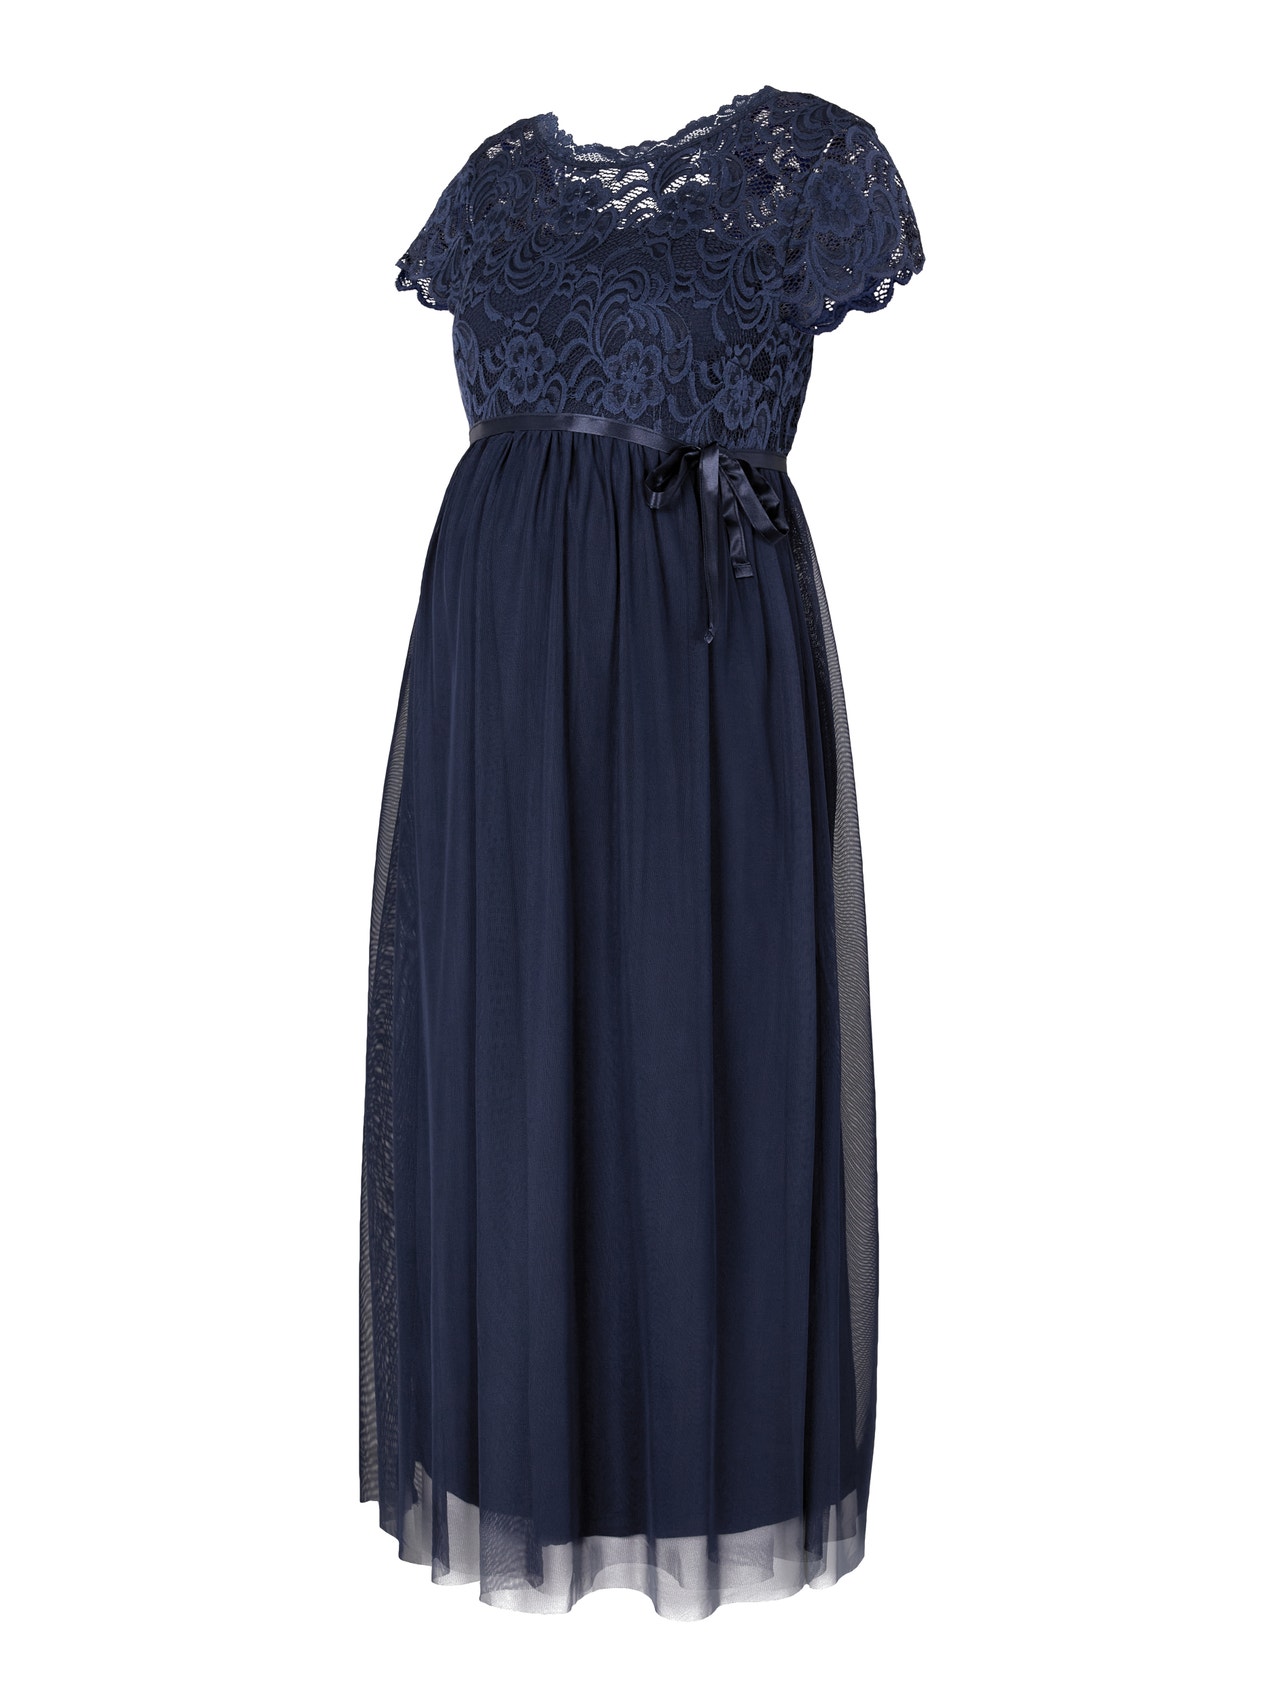 MAMA.LICIOUS vente-kjole -Navy Blazer - 20015425